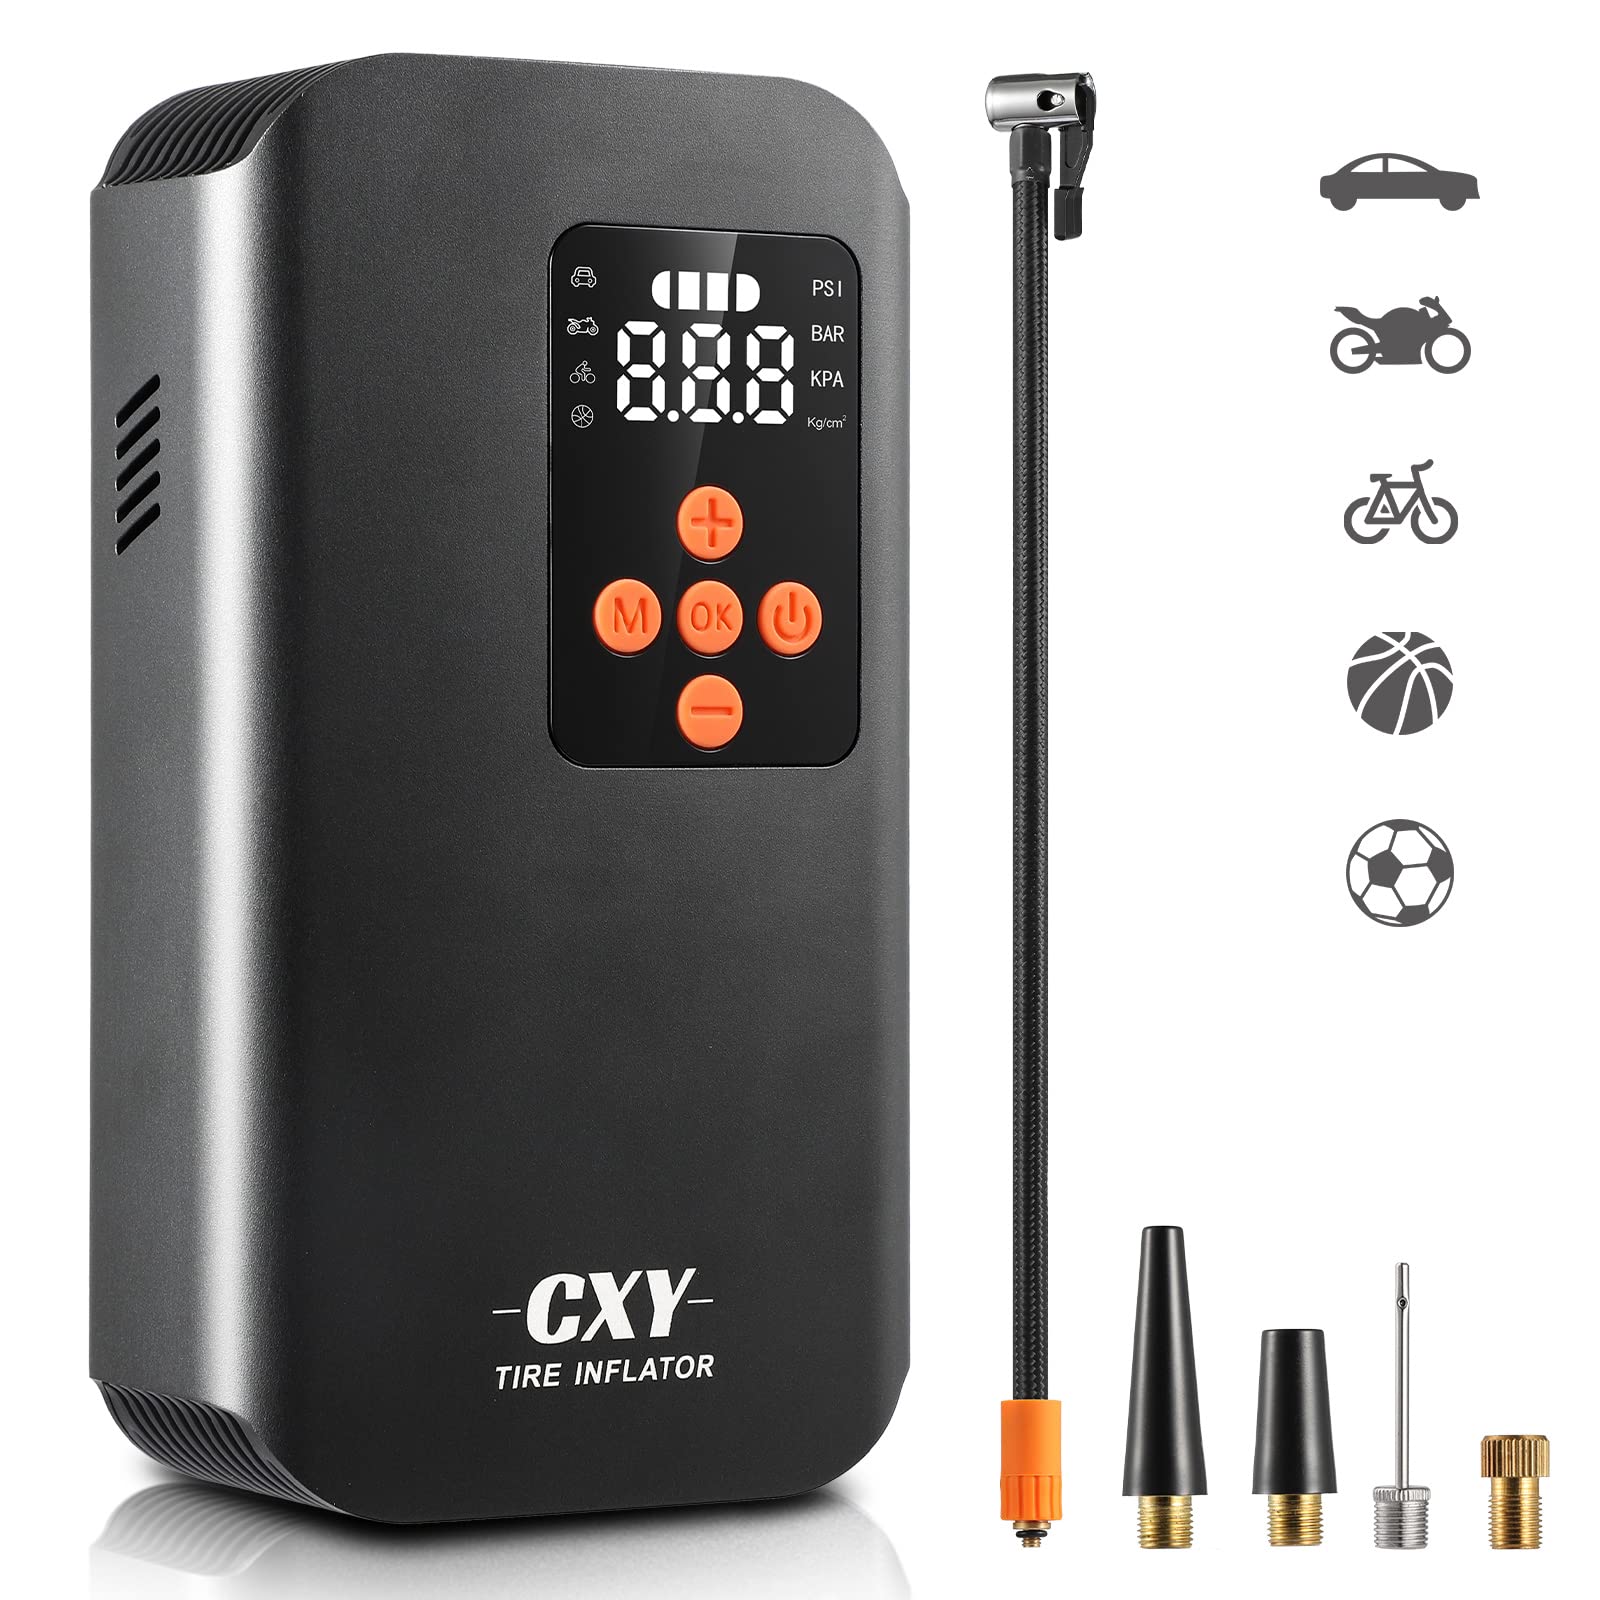 Cxy Elektrische Fahrradpumpe - 7500mAh, 150 PSI, Tragbare Mini Luftkompressor mit Manometer, USB & LED-Licht, Ideal für Auto, Motorrad, E-Bike und Bälle - Kompakt & Multifunktional von Cxy